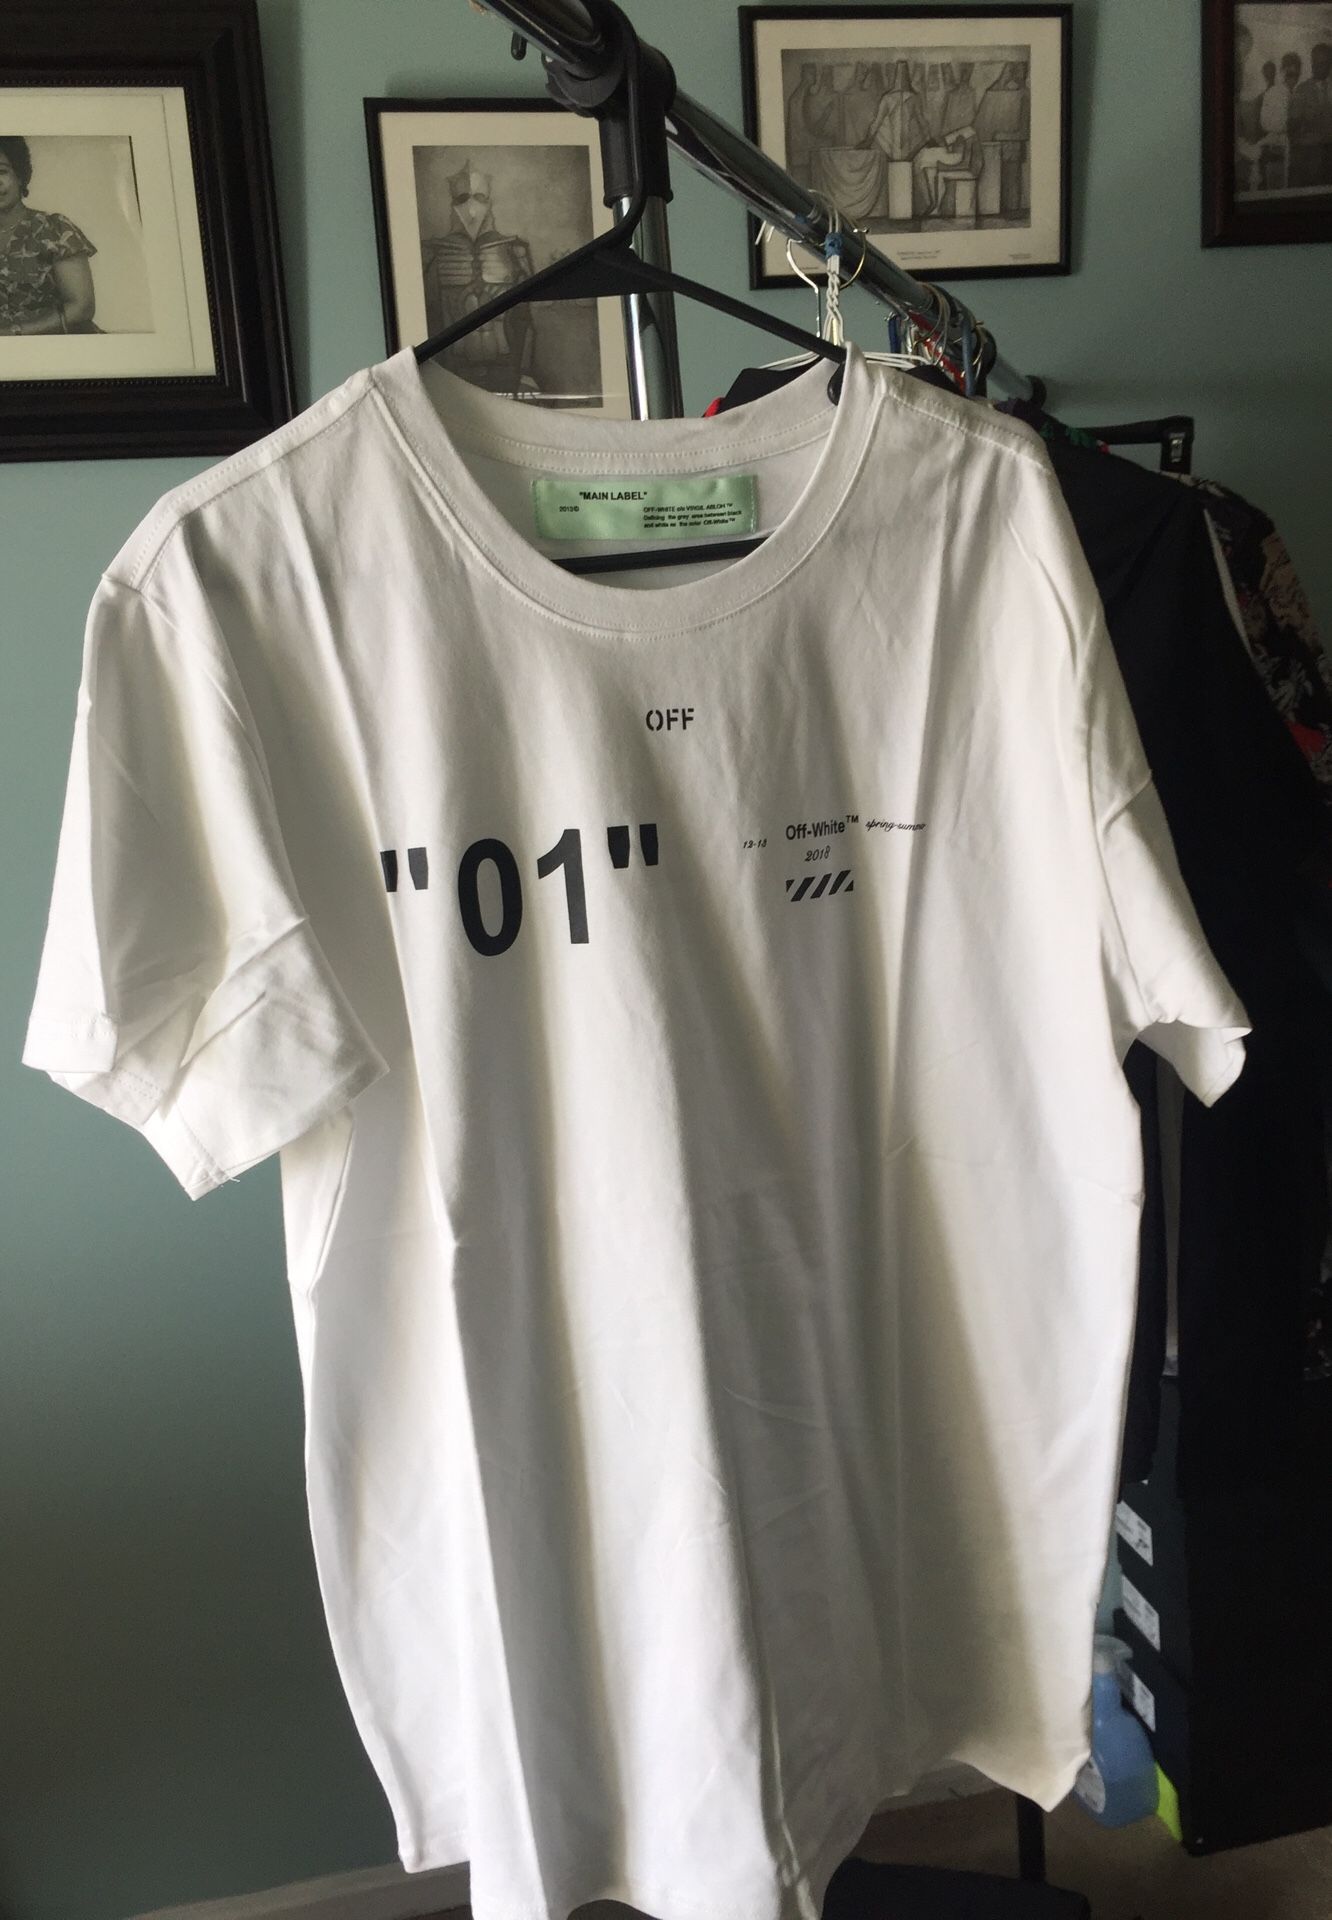 Off white T shirt